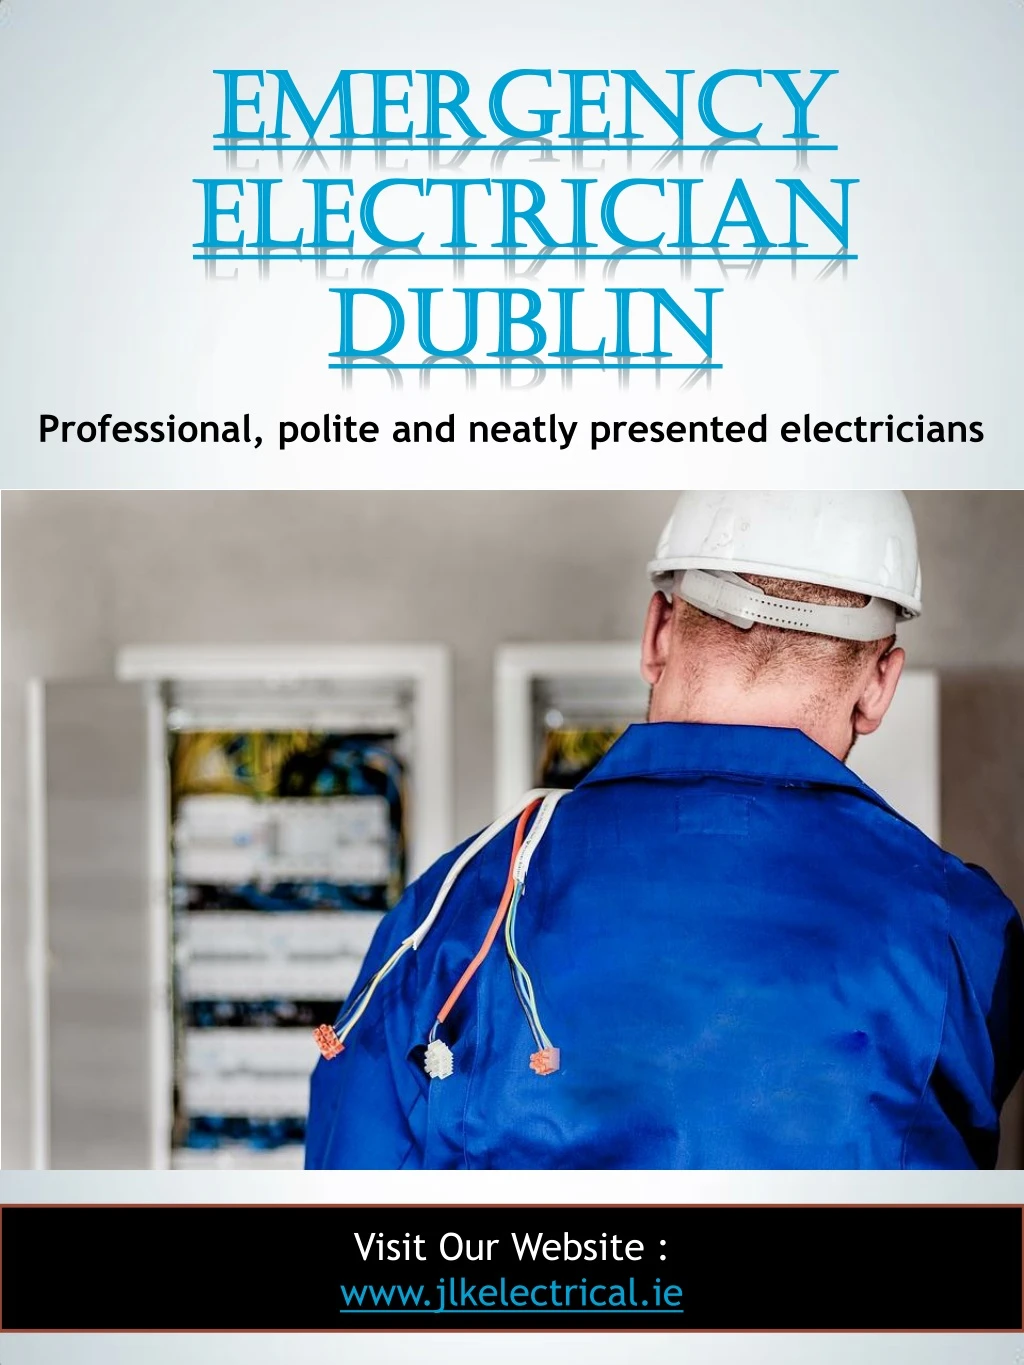 emergency emergency electrician electrician